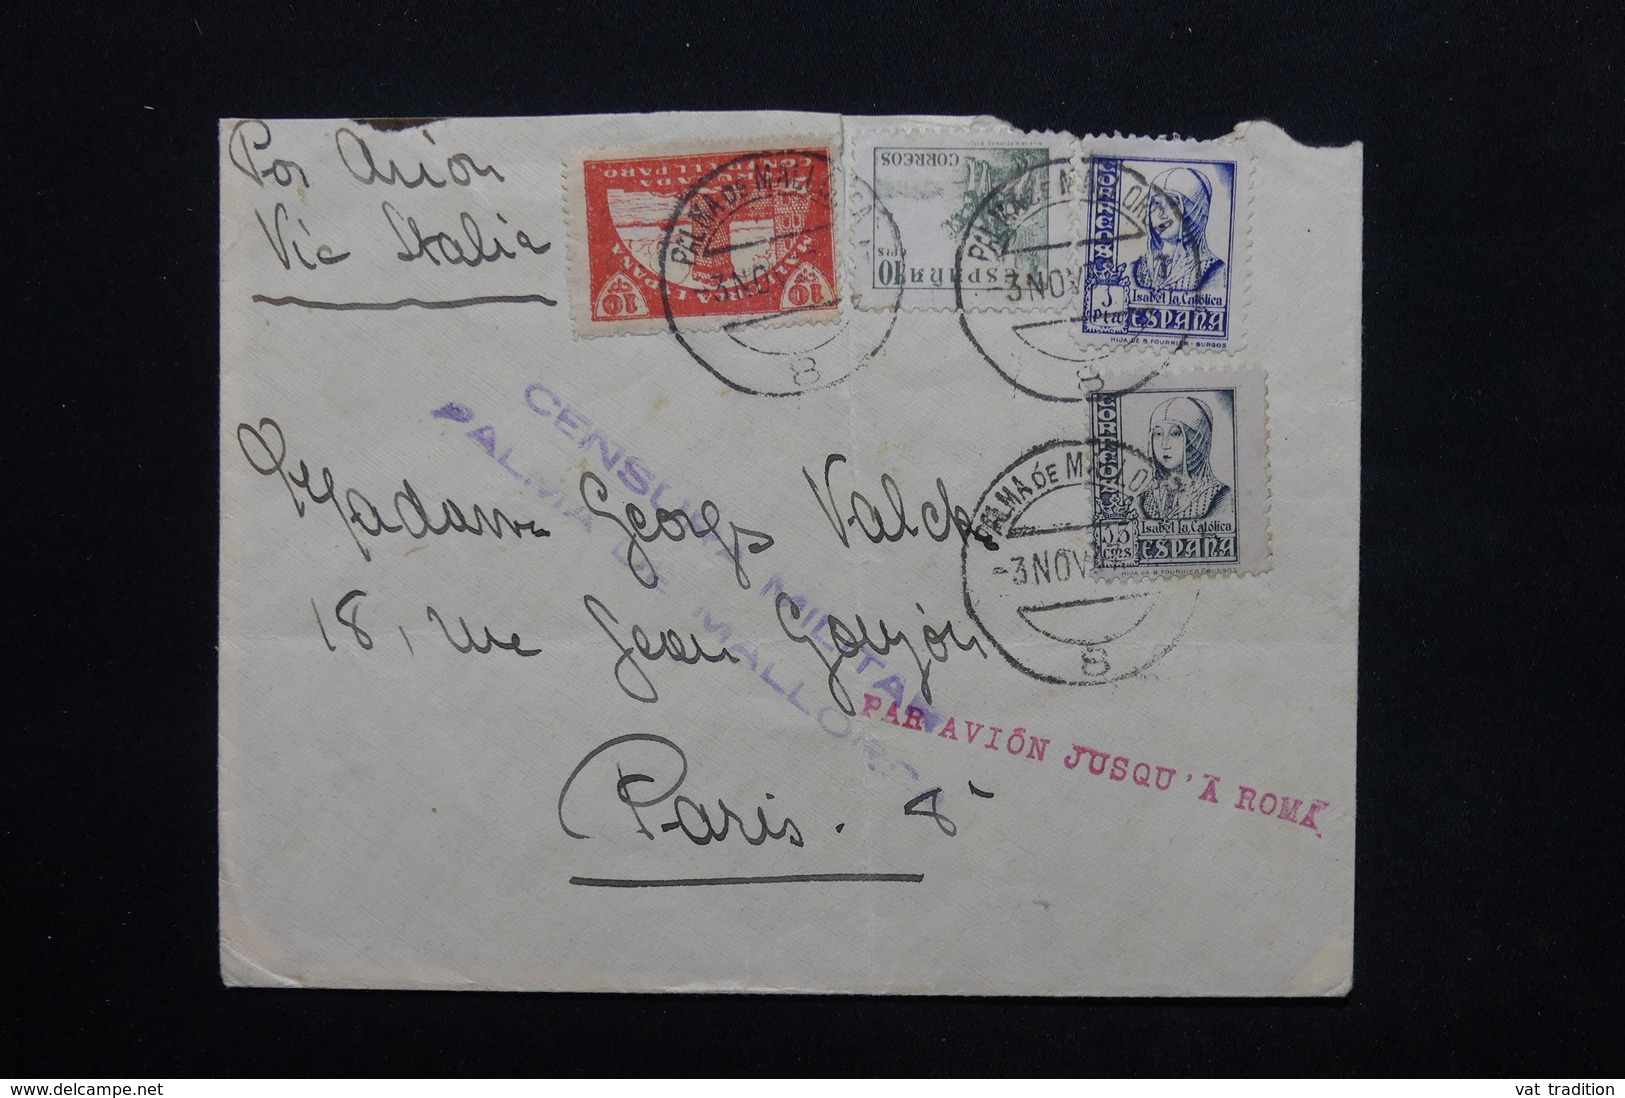 ESPAGNE - Enveloppe De Palma De Mallorca Pour Paris En 1937 Avec Contrôle Postal , Par Avion Via Rome - L 24788 - Republikanische Zensur